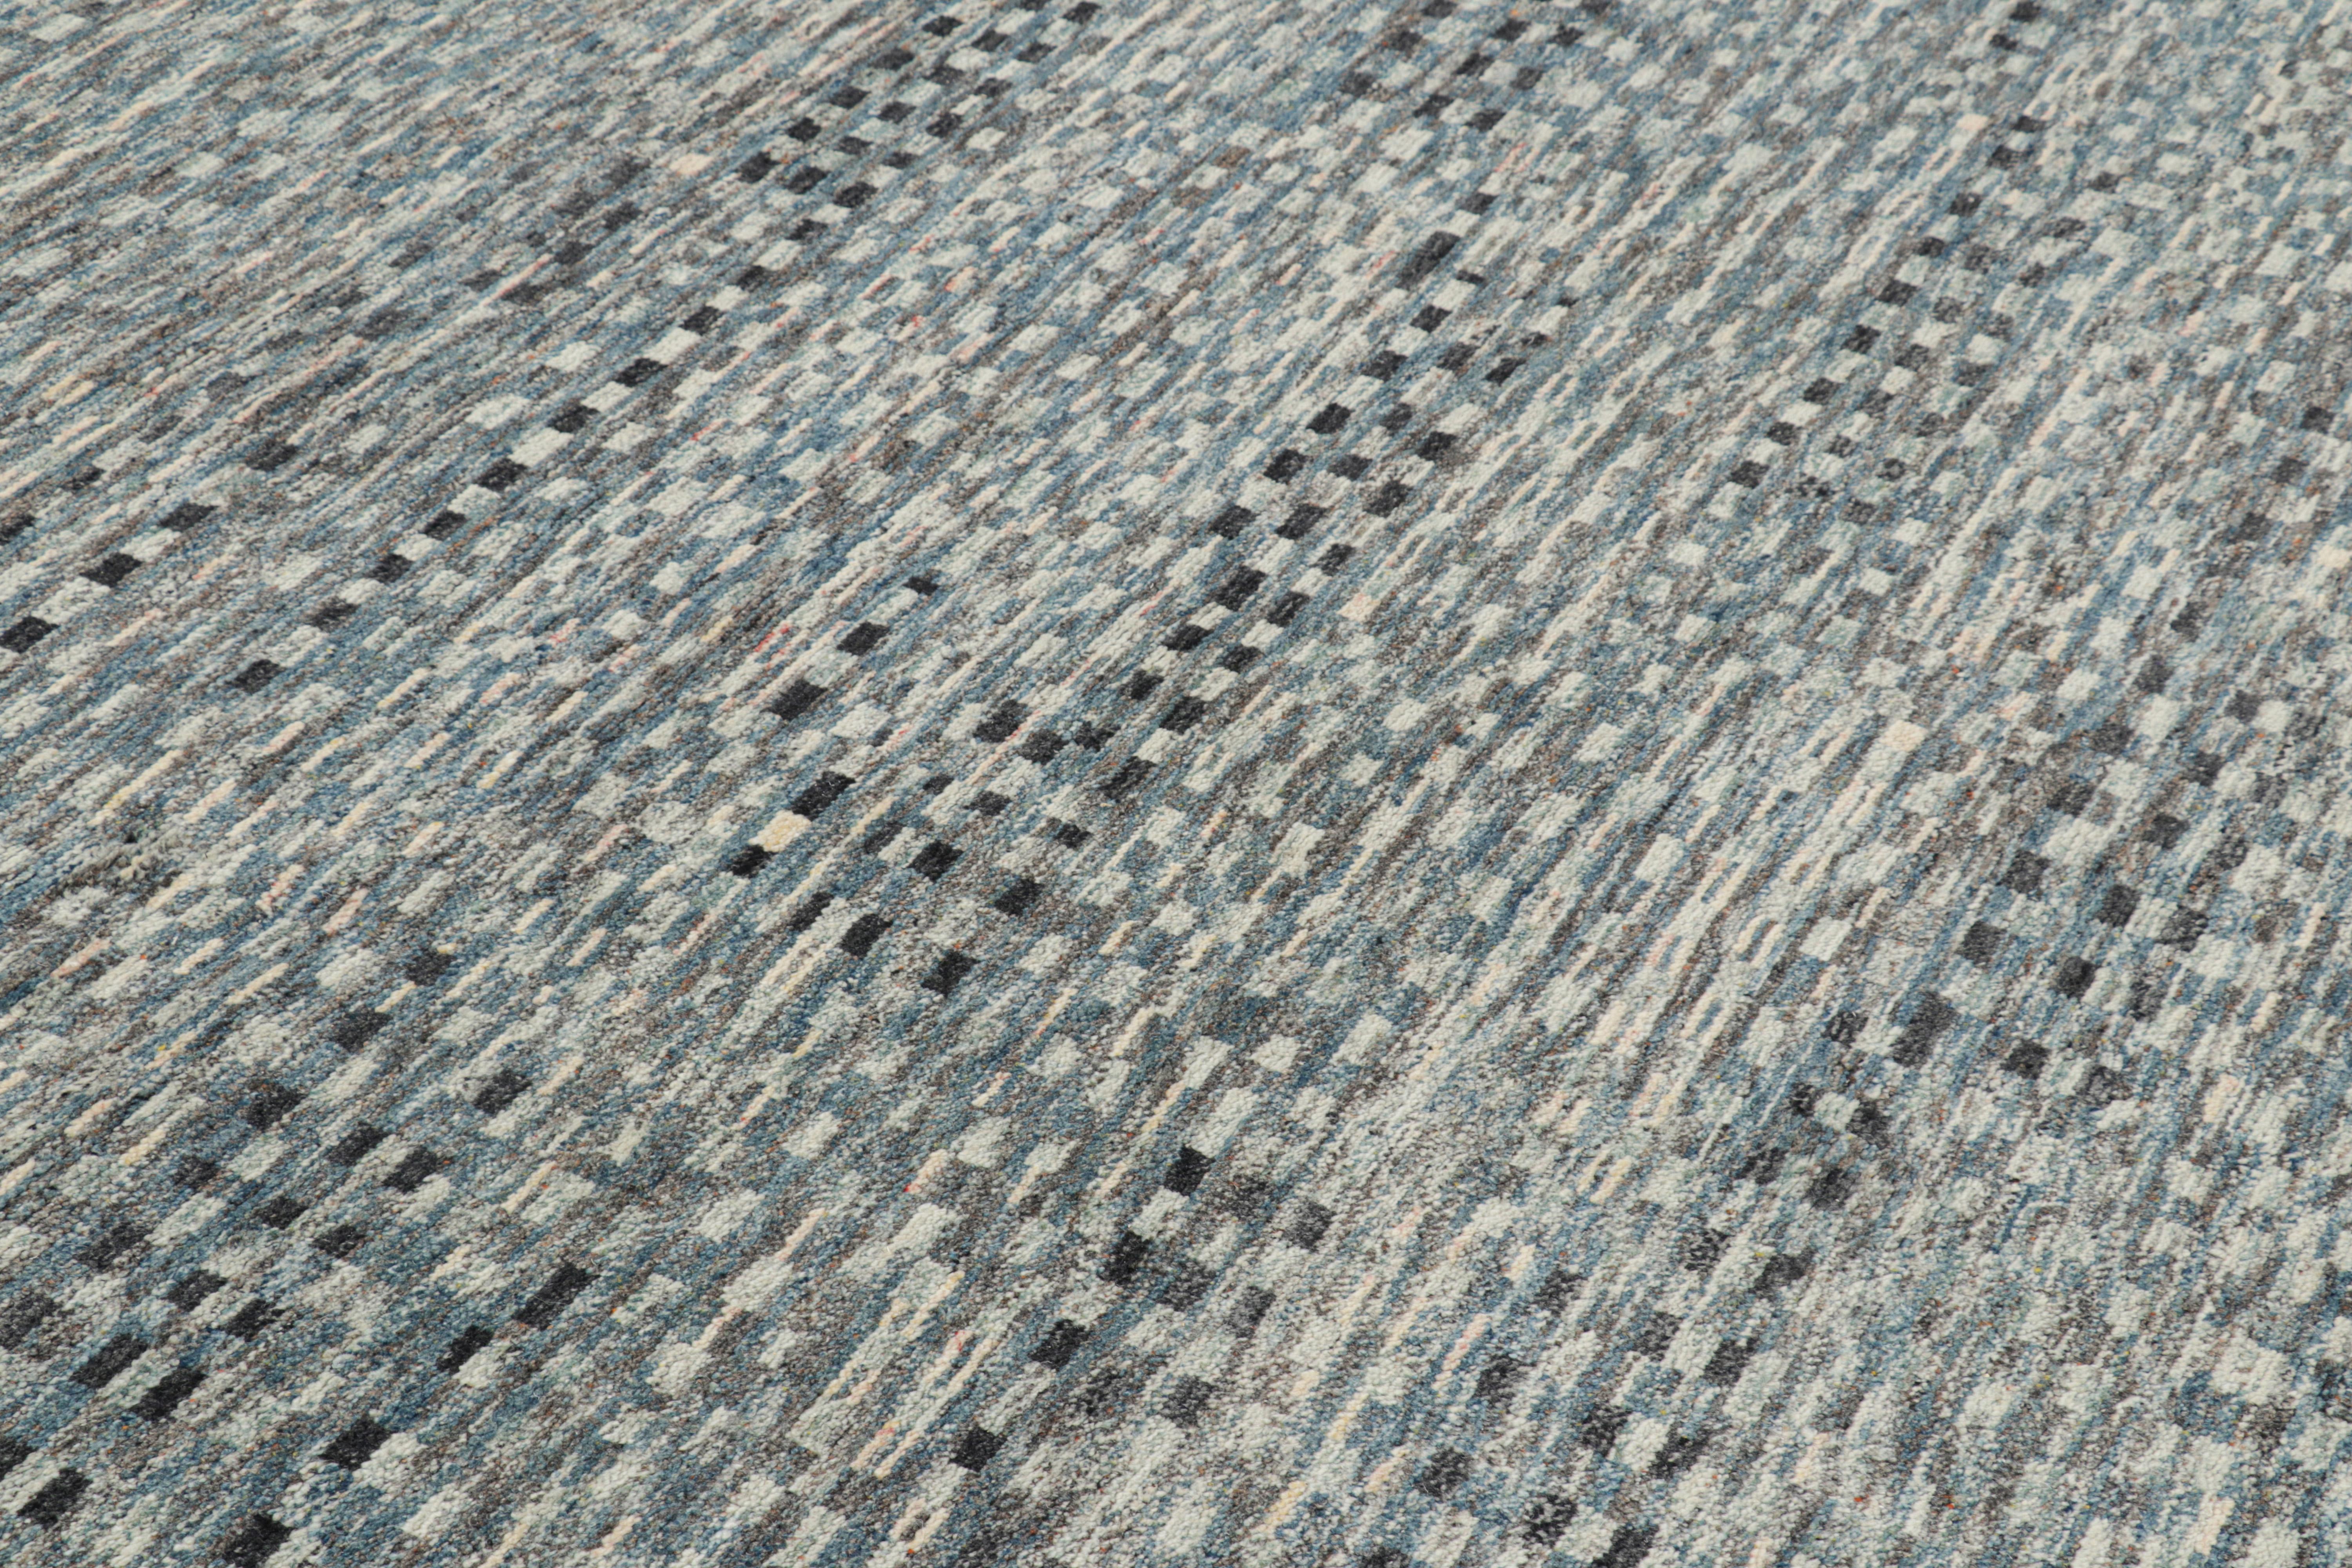 Noué à la main en laine, ce tapis contemporain 8x10 de Rug & Kilim présente des motifs géométriques d'apparence moderne, presque abstraite, qui s'inspirent des dessins primitivistes de la tribu berbère Boucherouite. 

Sur le Design : 

Un poil riche